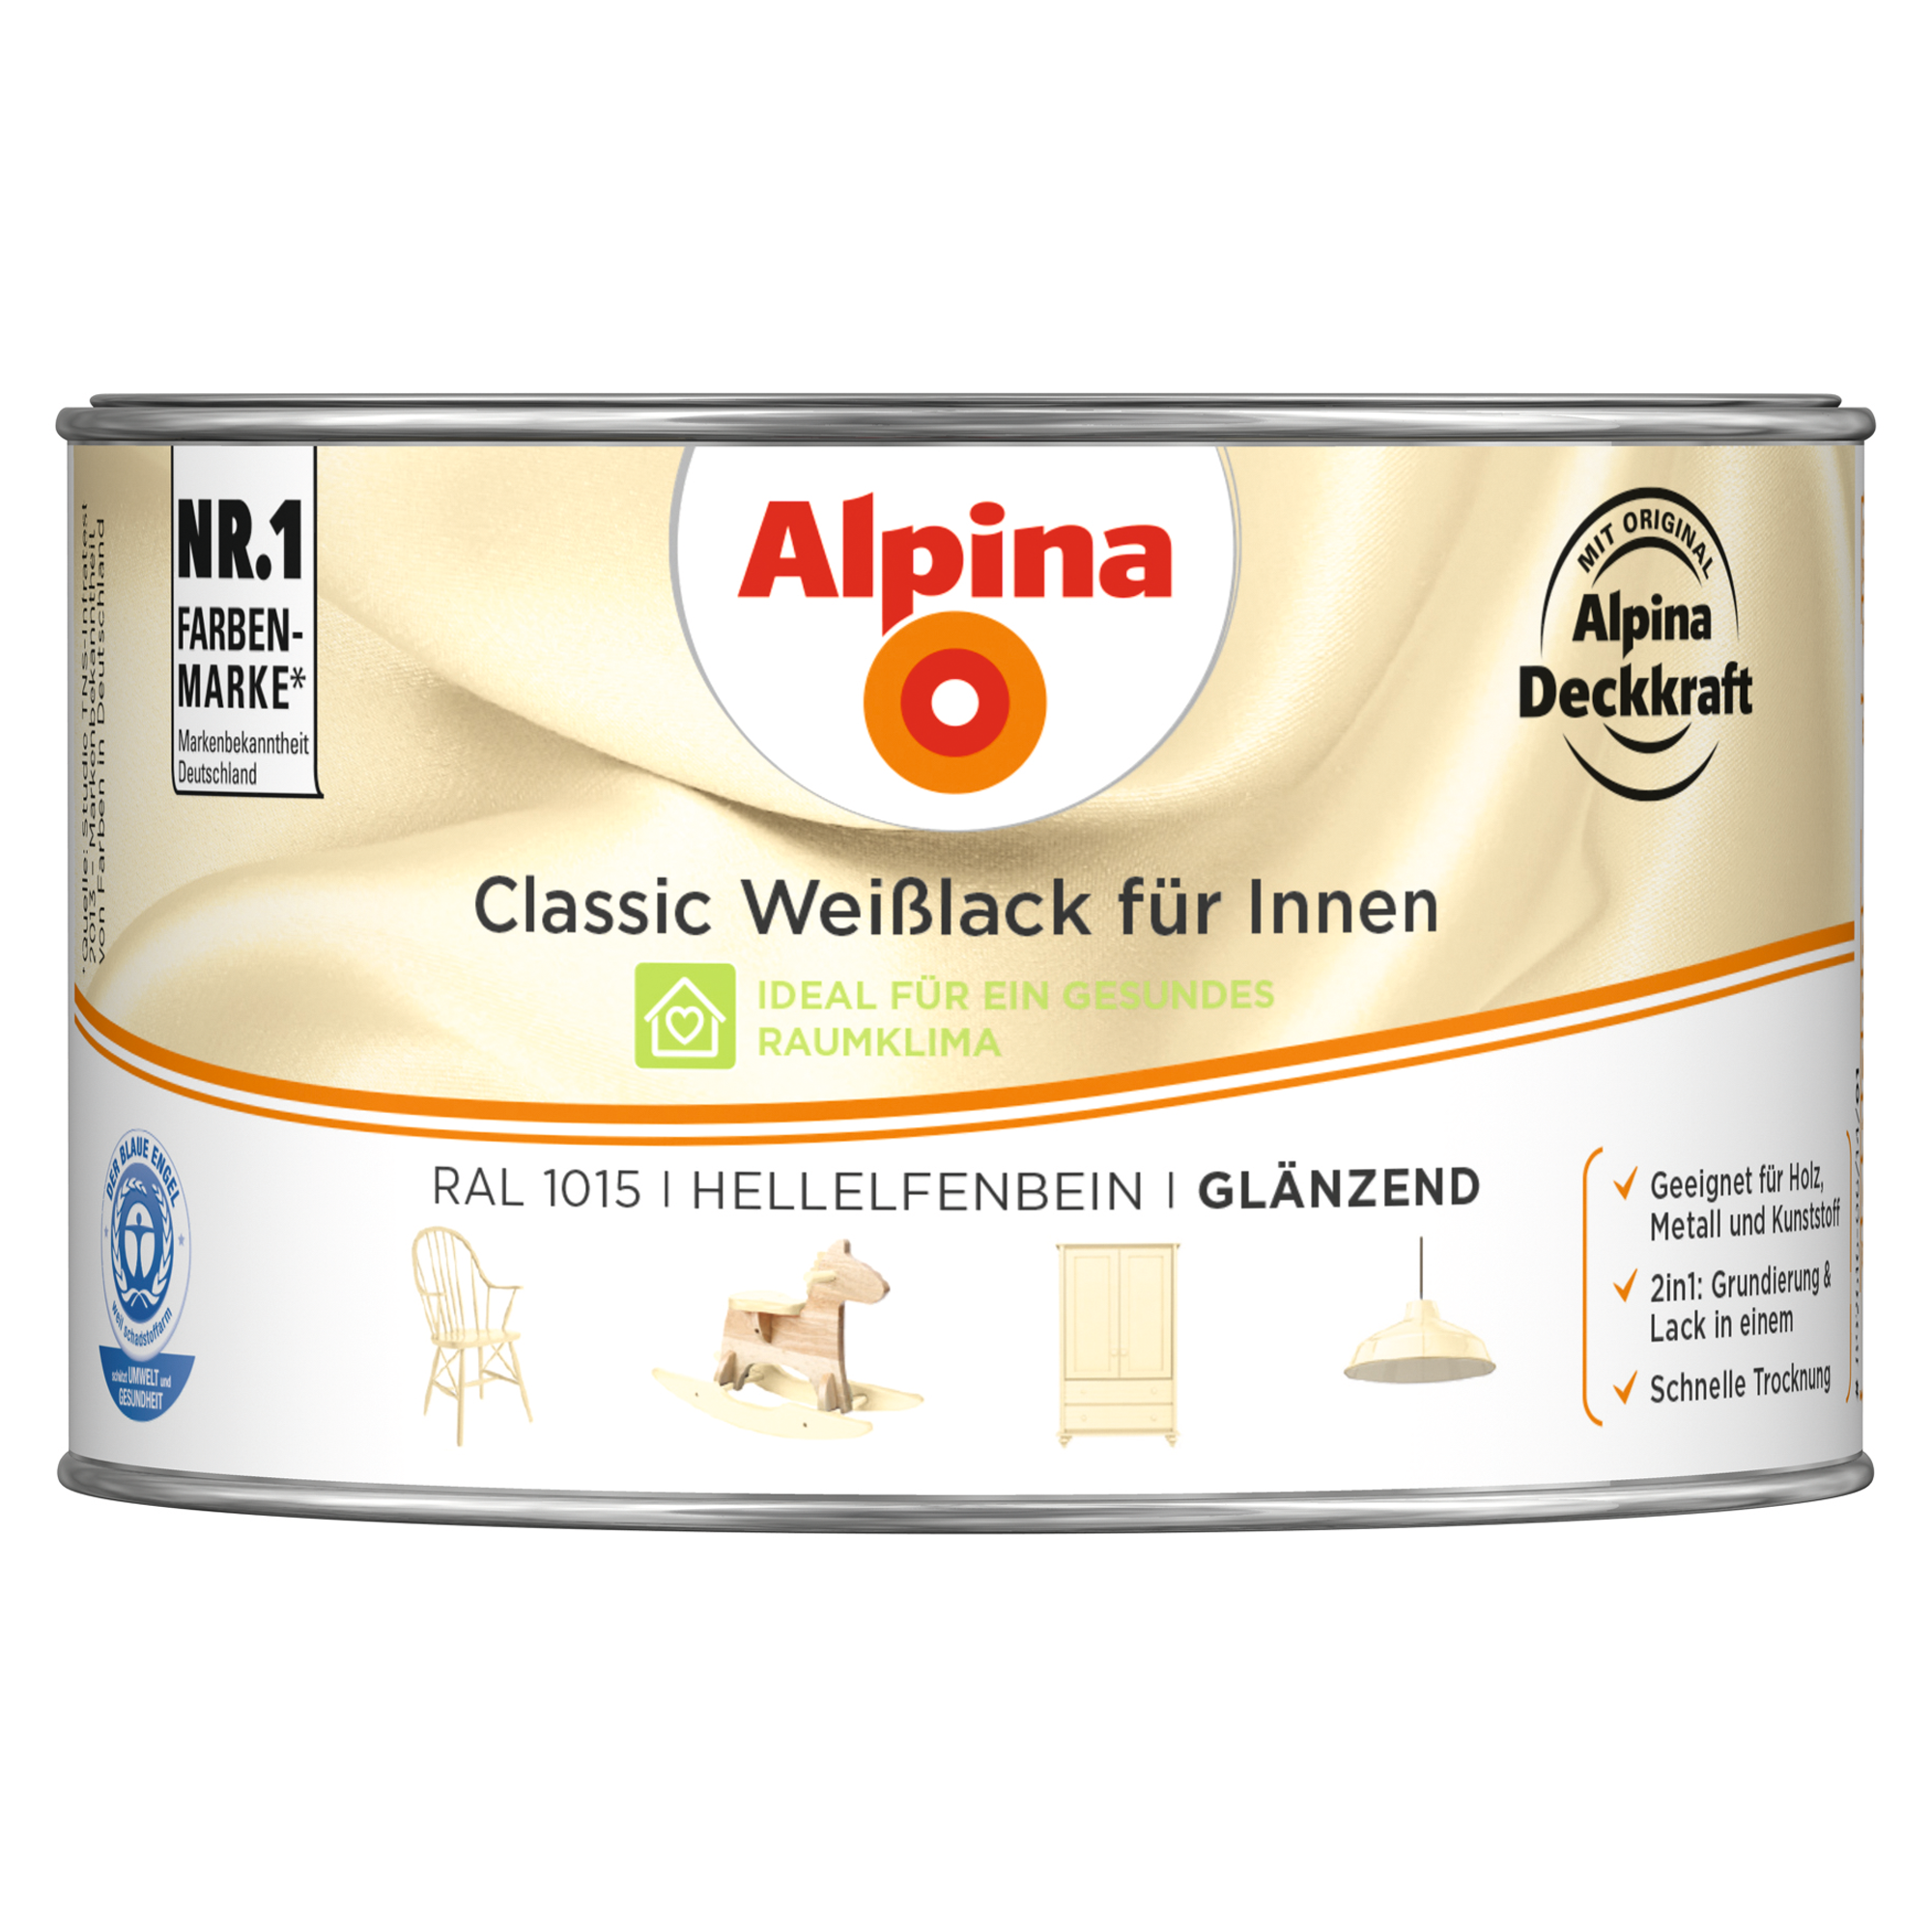 Weißlack für Innen elfenbeinfarben glänzend 300 ml + product picture